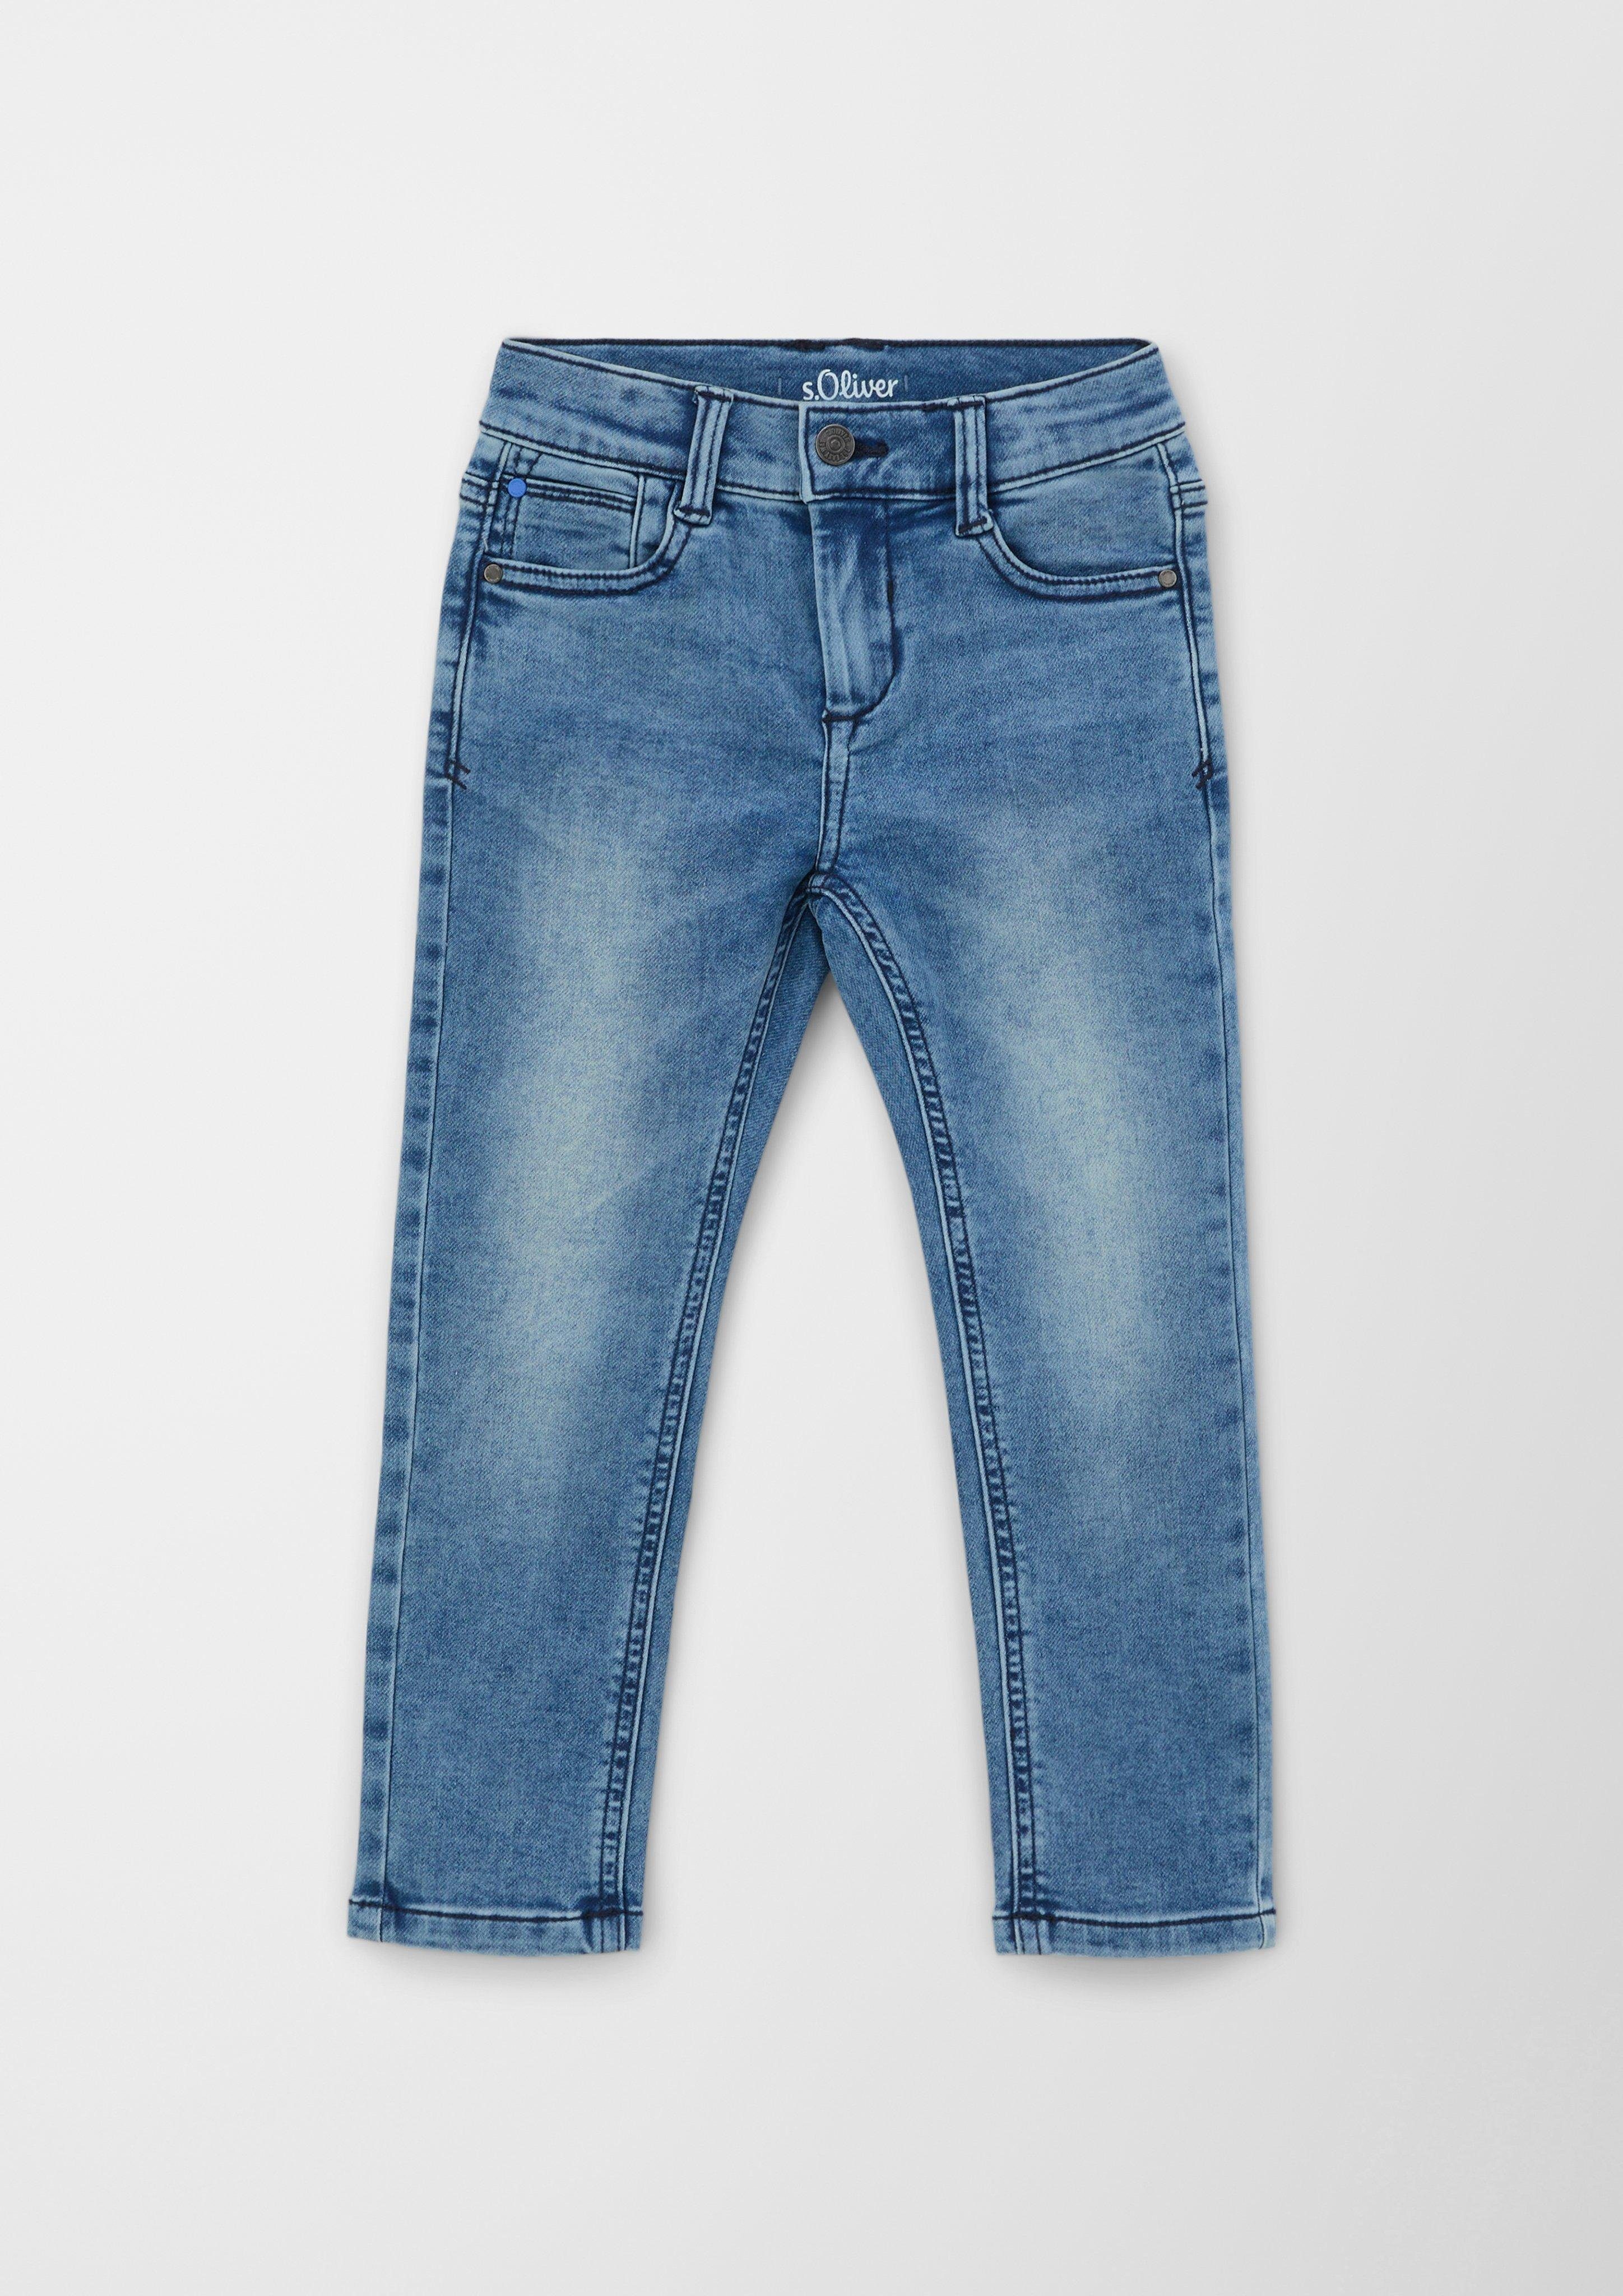 Rise mit im 5-Pocket-Jeans mit Regular s.Oliver Leg / Taschen Verschluss, / Fit 5-Pocket-Design, Reißverschluss Waschung, Knopf als / Straight Pelle Jeans mit Mid